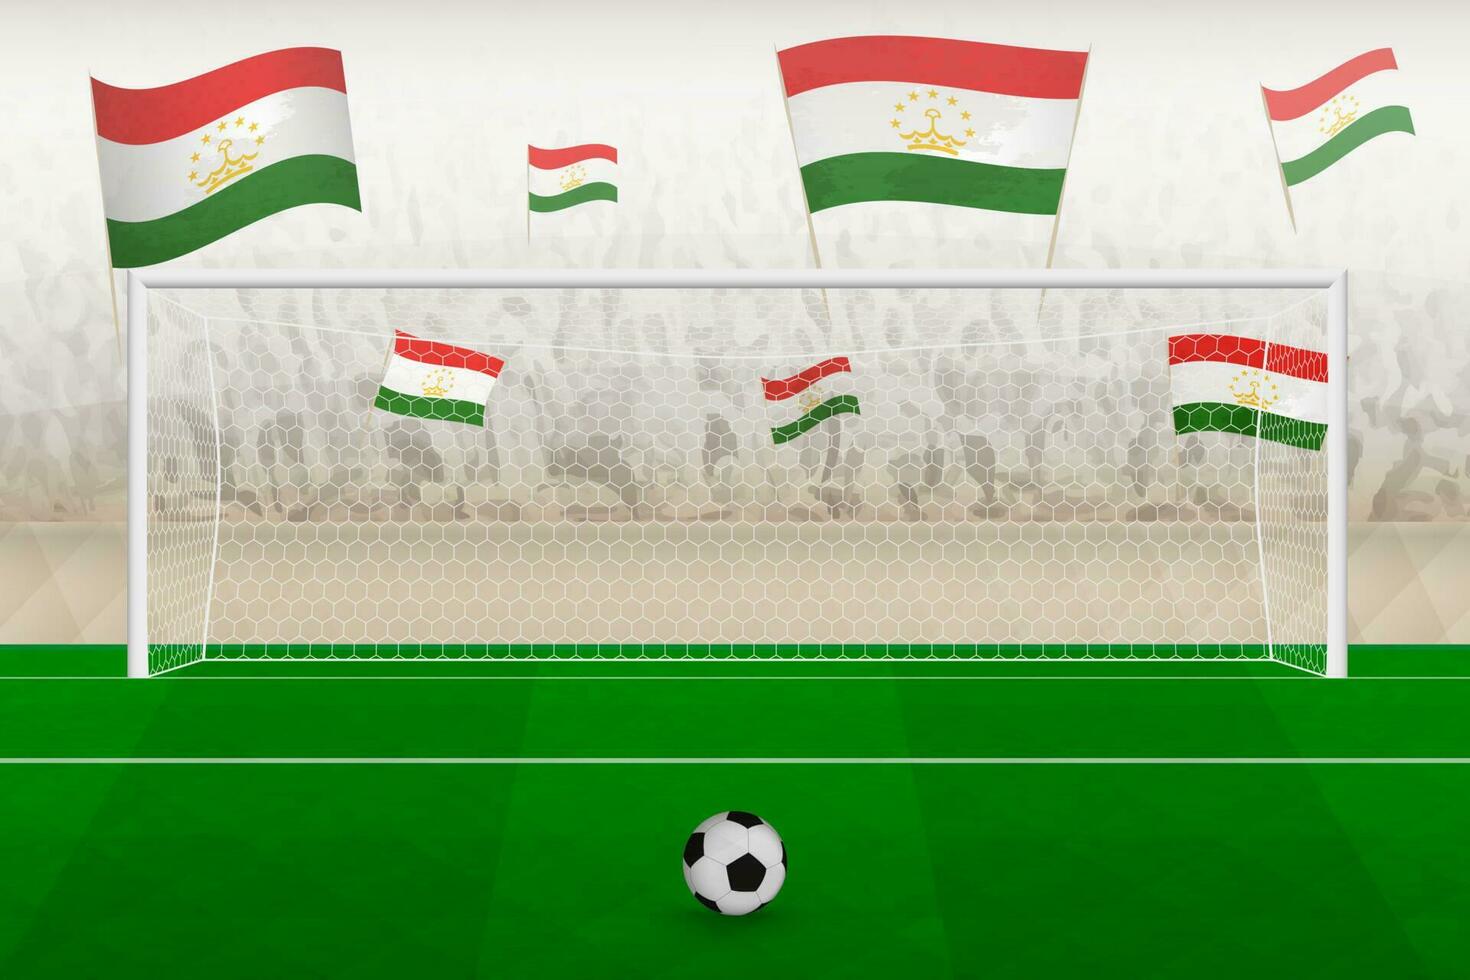 Tadzjikistan Amerikaans voetbal team fans met vlaggen van Tadzjikistan juichen Aan stadion, straf trap concept in een voetbal wedstrijd. vector